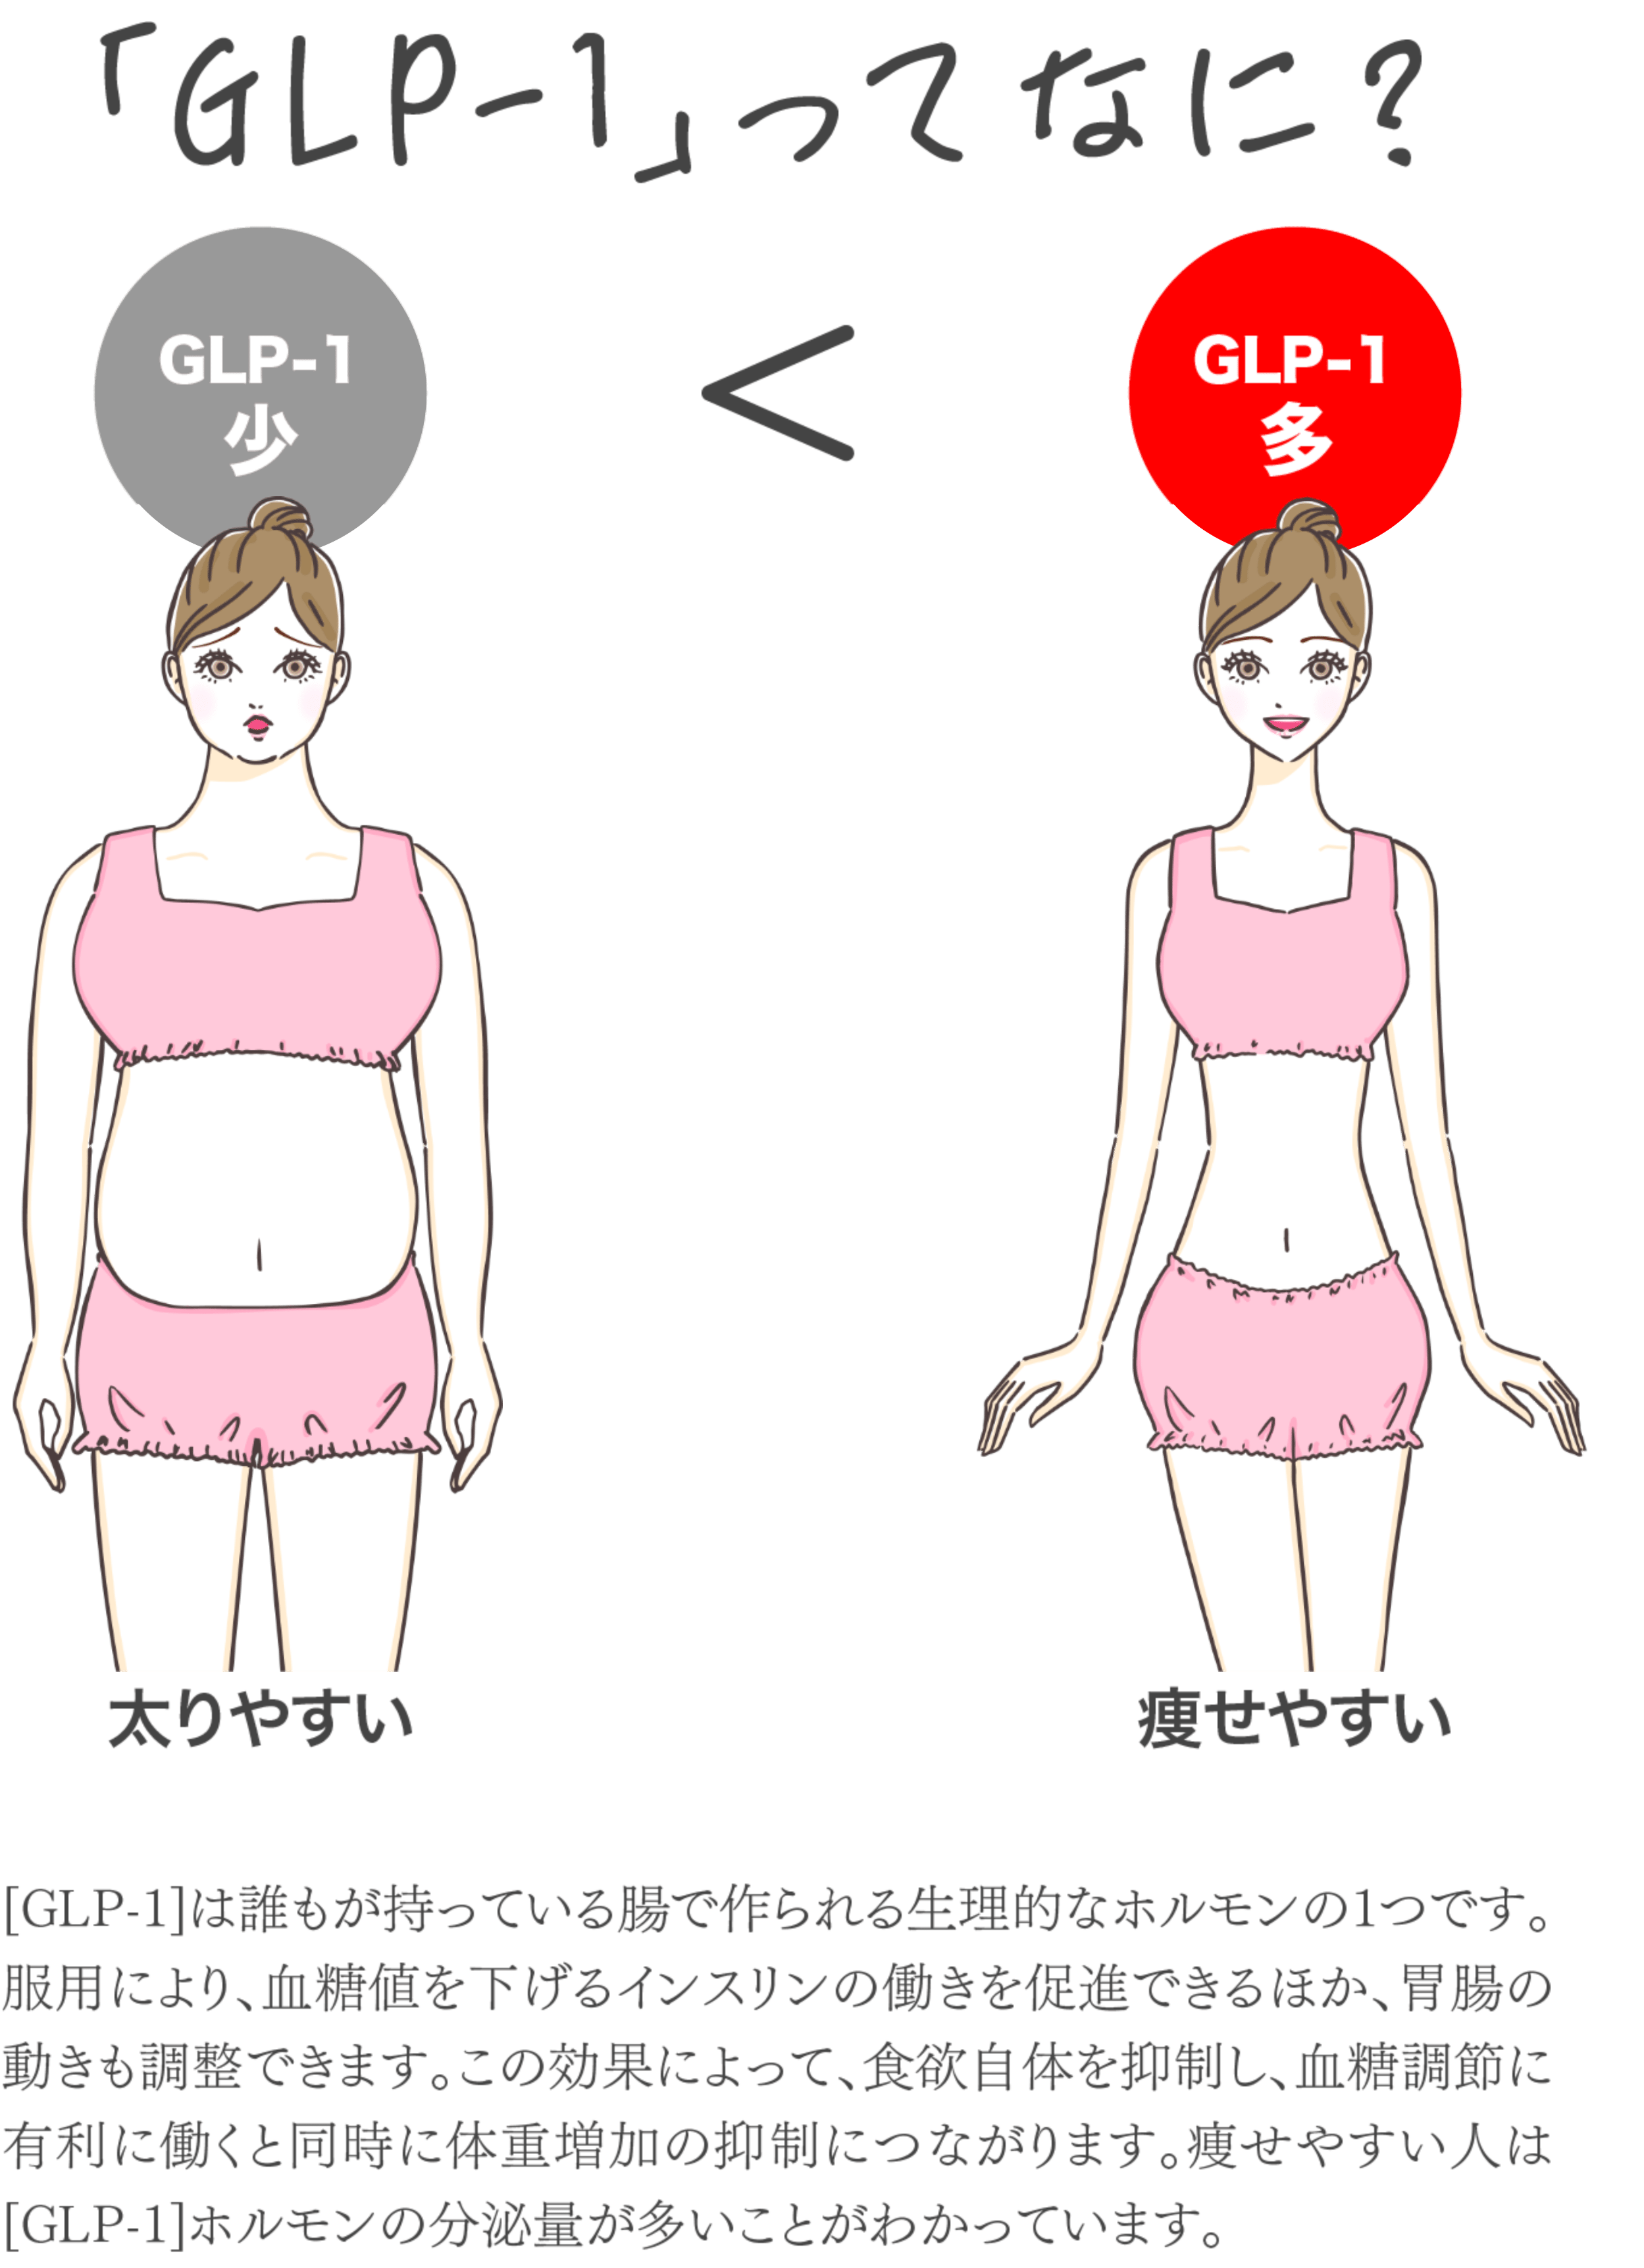 「GLP-1」ってなに？glp-1が少ないと太りやすく、glp-1が多いと痩せやすい。[GLP-1]は誰もが持っている腸で作られる生理的なホルモンの1つです。服用により、血糖値を下げるインスリンの働きを促進できるほか、胃腸の動きも調整できます。この効果によって、食欲自体を抑制し、血糖調節に有利に働くと同時に体重増加の抑制につながります。痩せやすい人は[GLP-1]ホルモンの分泌量が多いことがわかっています。